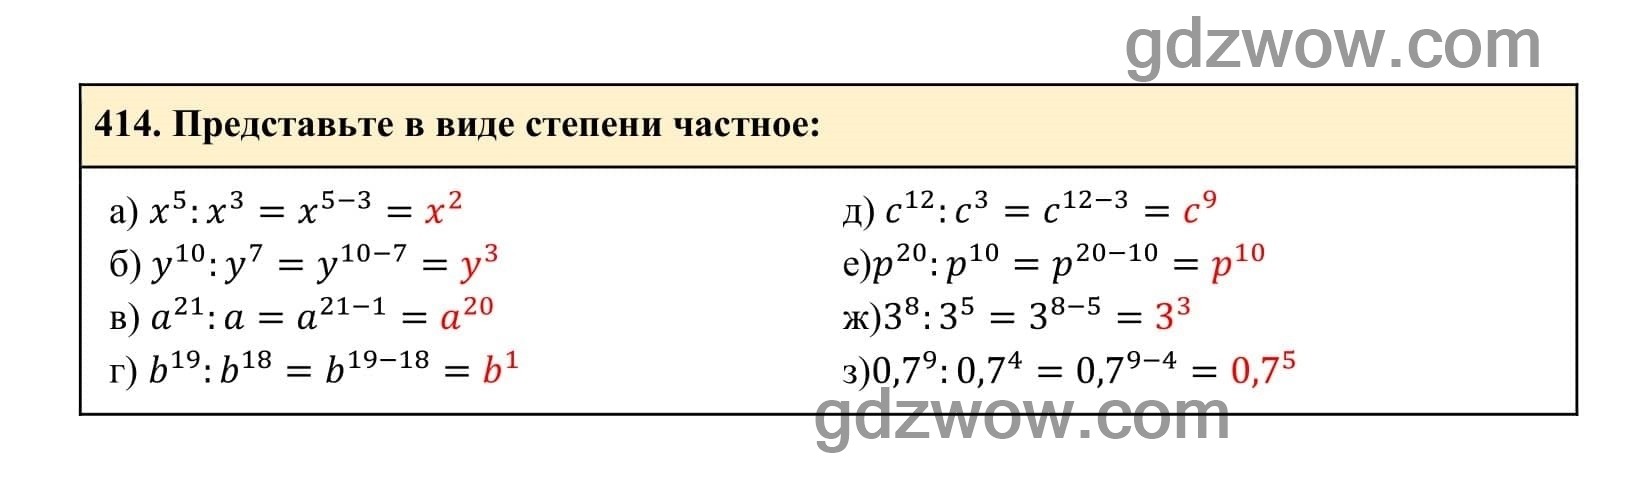 Упражнение 414 - ГДЗ по Алгебре 7 класс Учебник Макарычев (решебник) - GDZwow